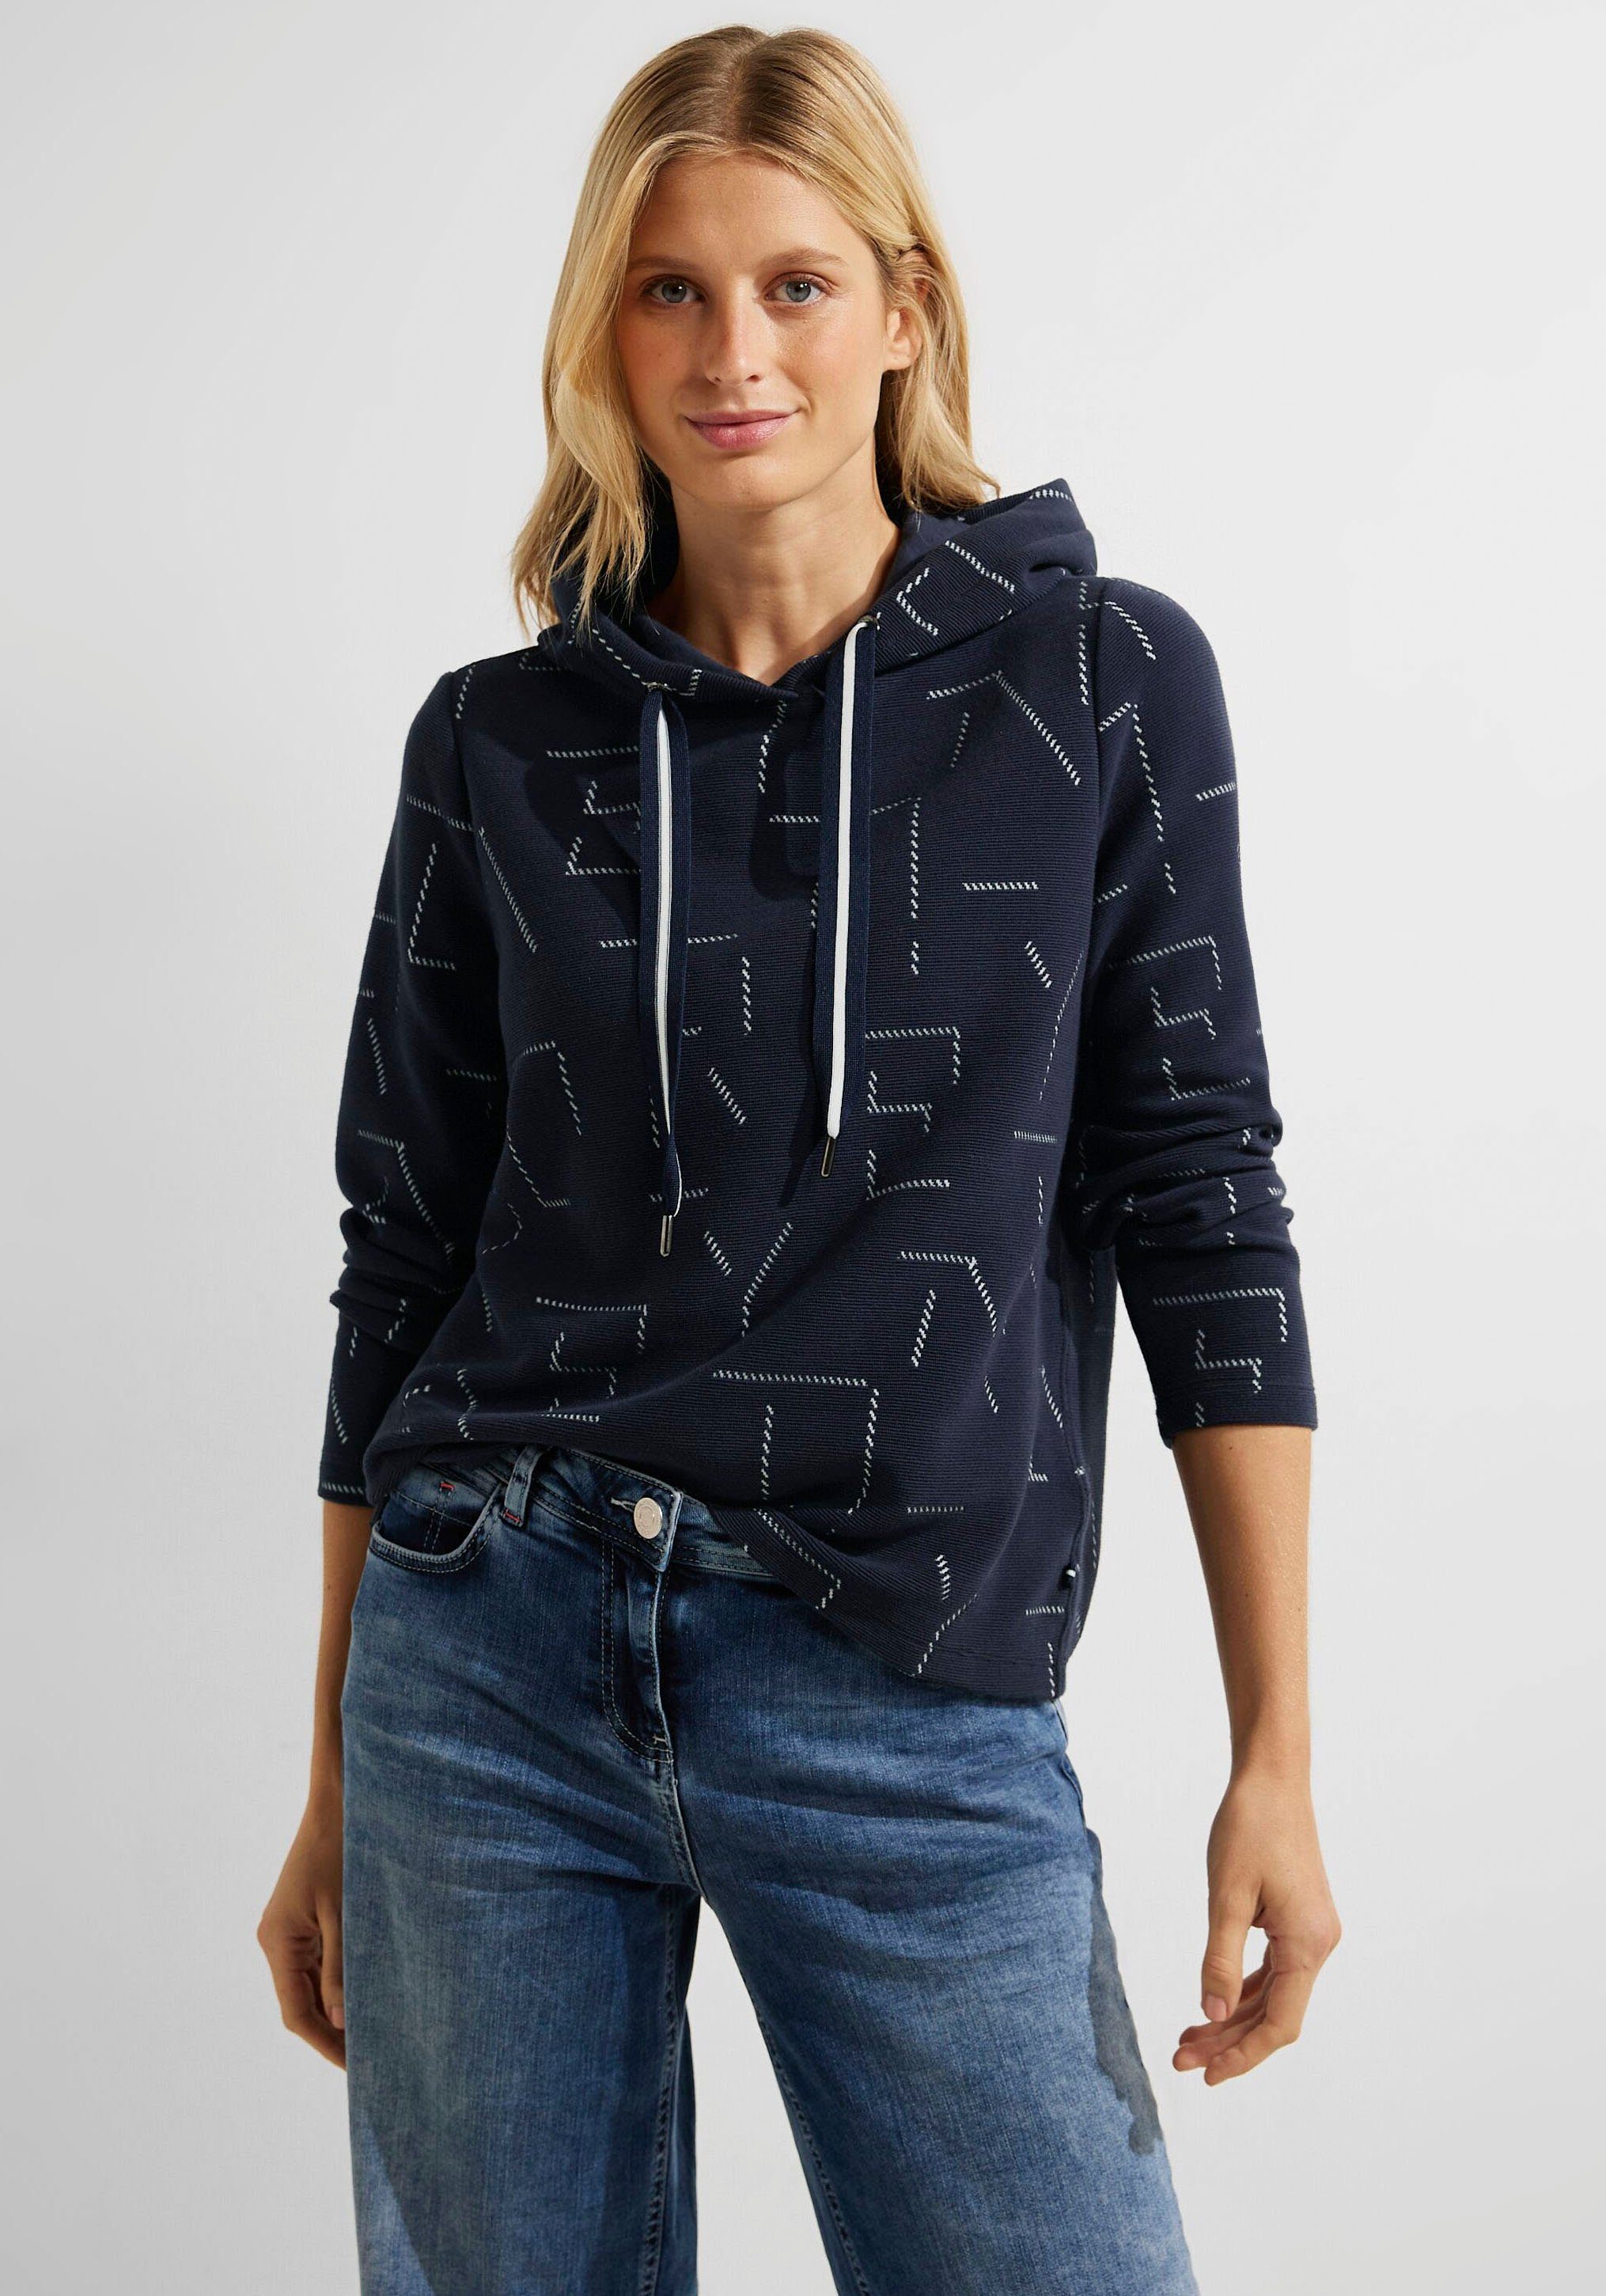 Cecil Sweatshirt mit einzigartigem Jacquard-Muster, Perfekte Kombination  aus Lässigkeit und Raffinesse